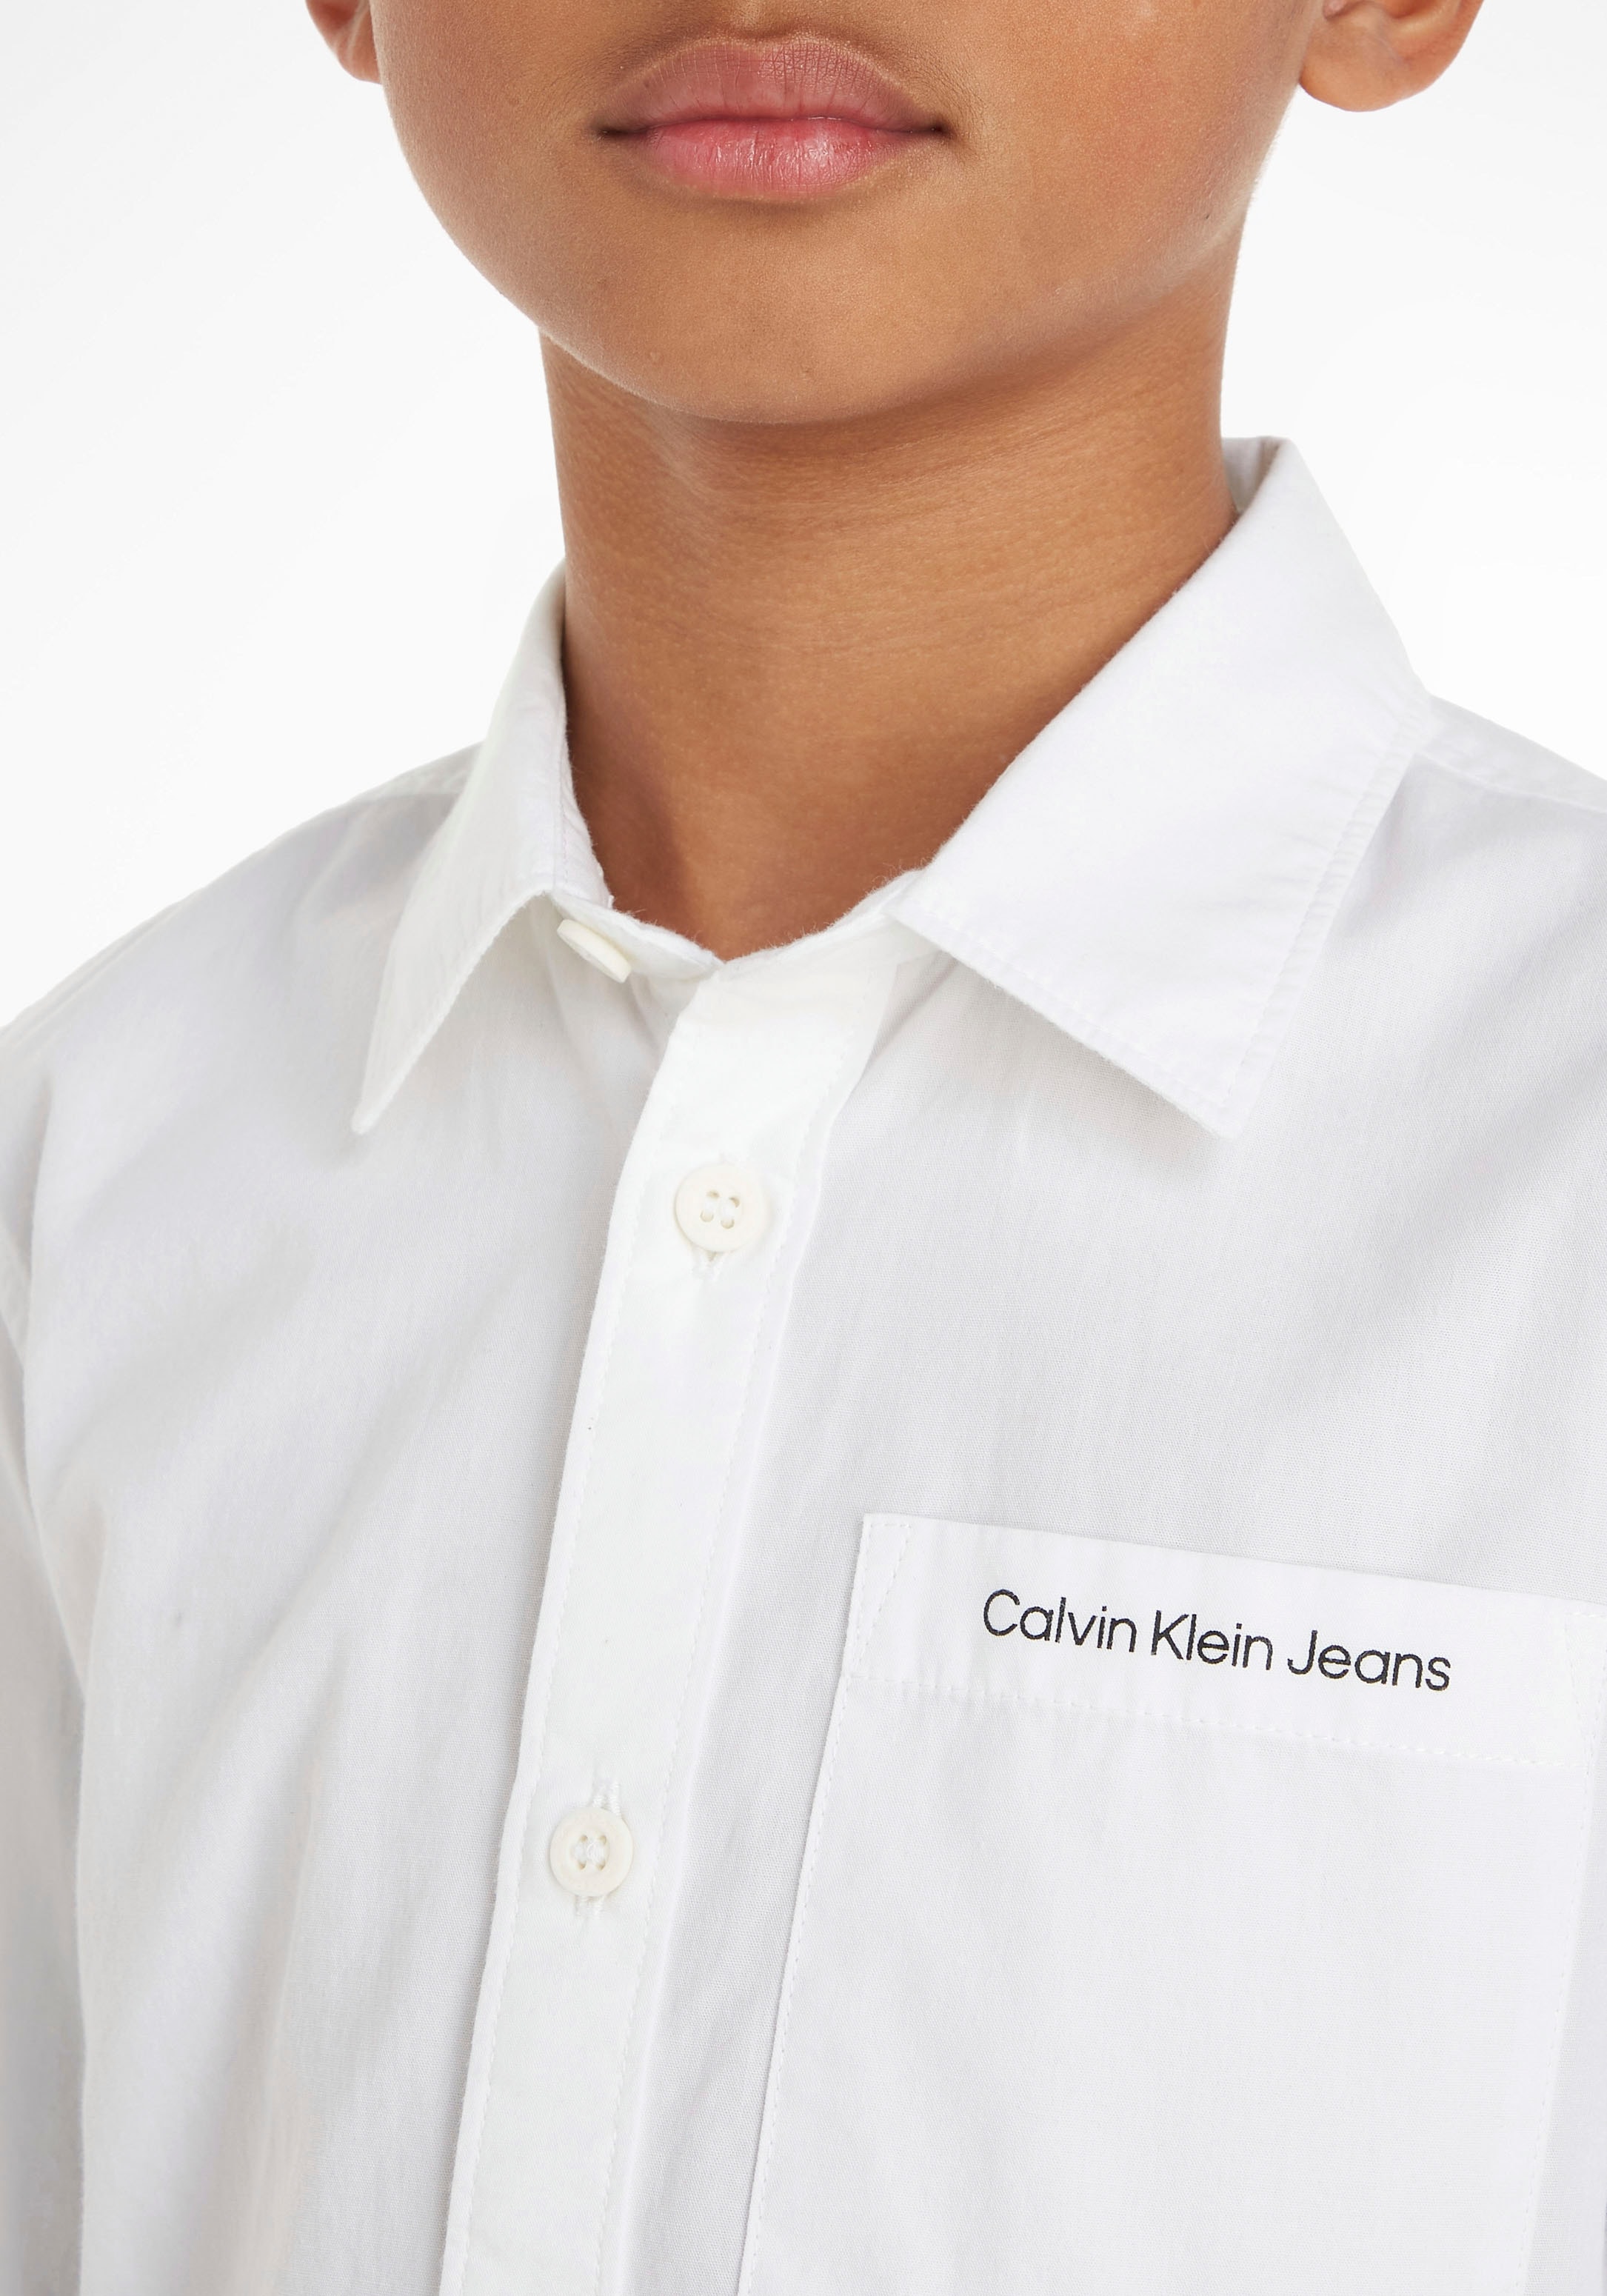 Calvin Klein Jeans Langarmhemd »CEREMONY POPLIN SHIRT« kaufen bei OTTO | Hemden